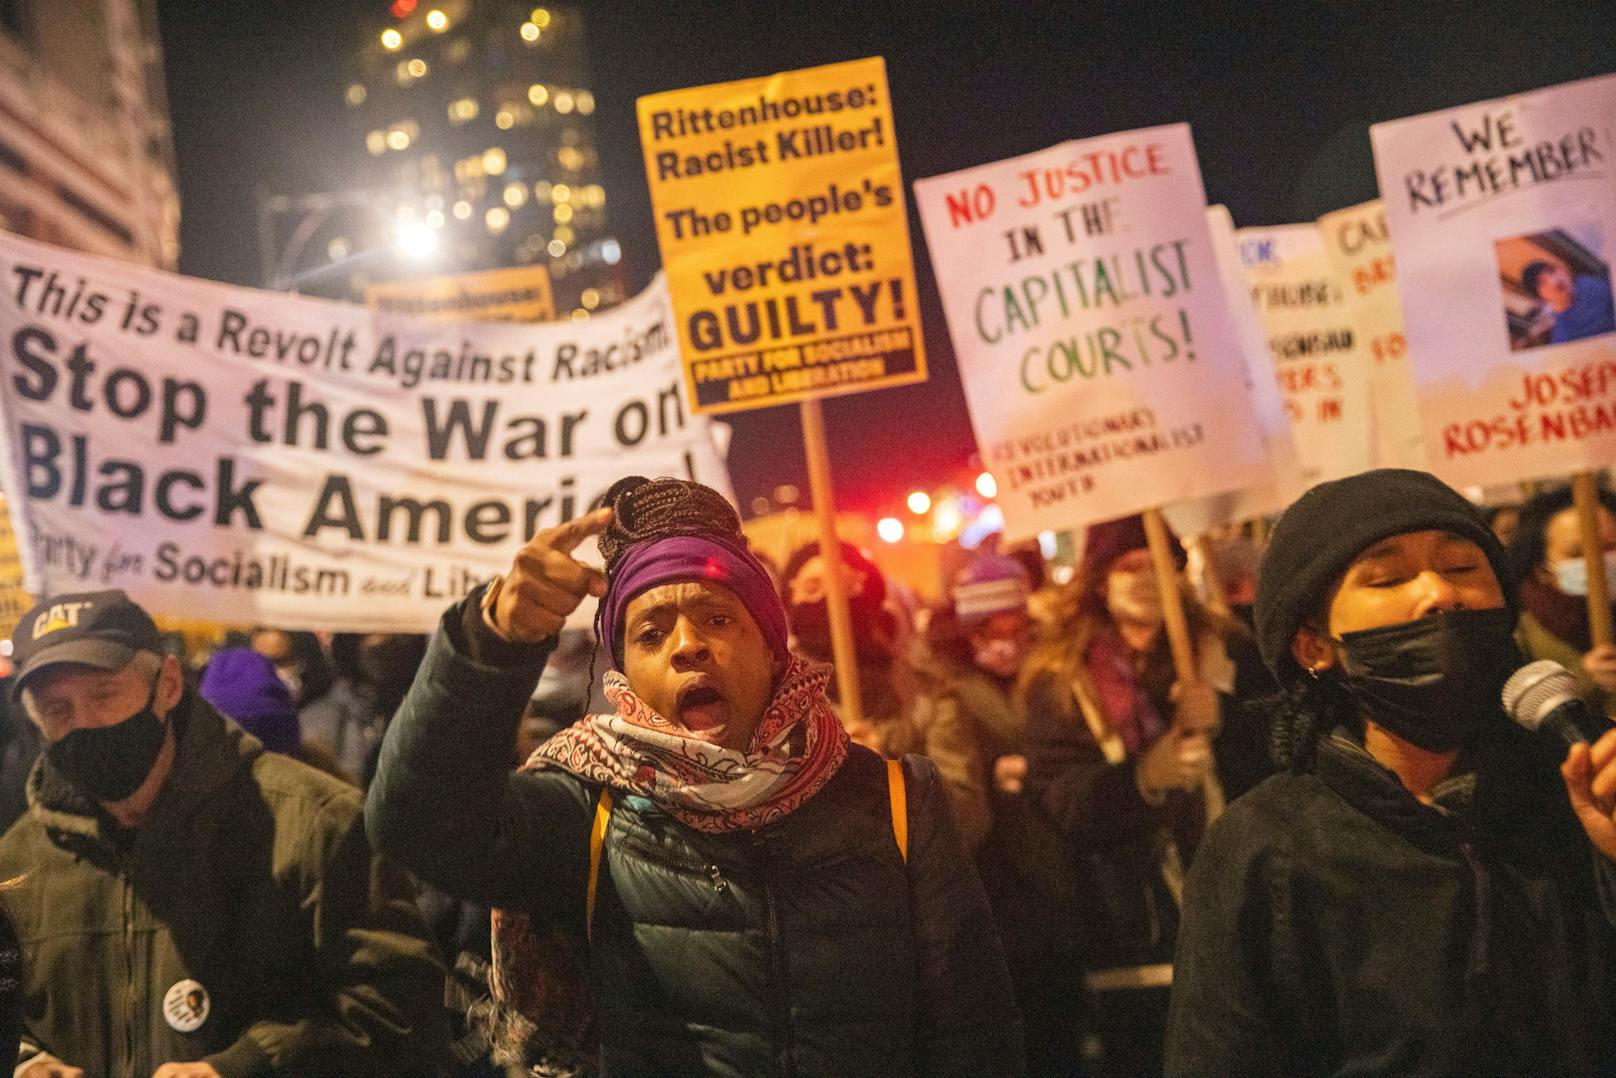 Der Prozess ist politisch aufgeladen, da er im Zusammenhang mit den Black-Lives-Matter-Protesten vom vergangenen Jahr steht.